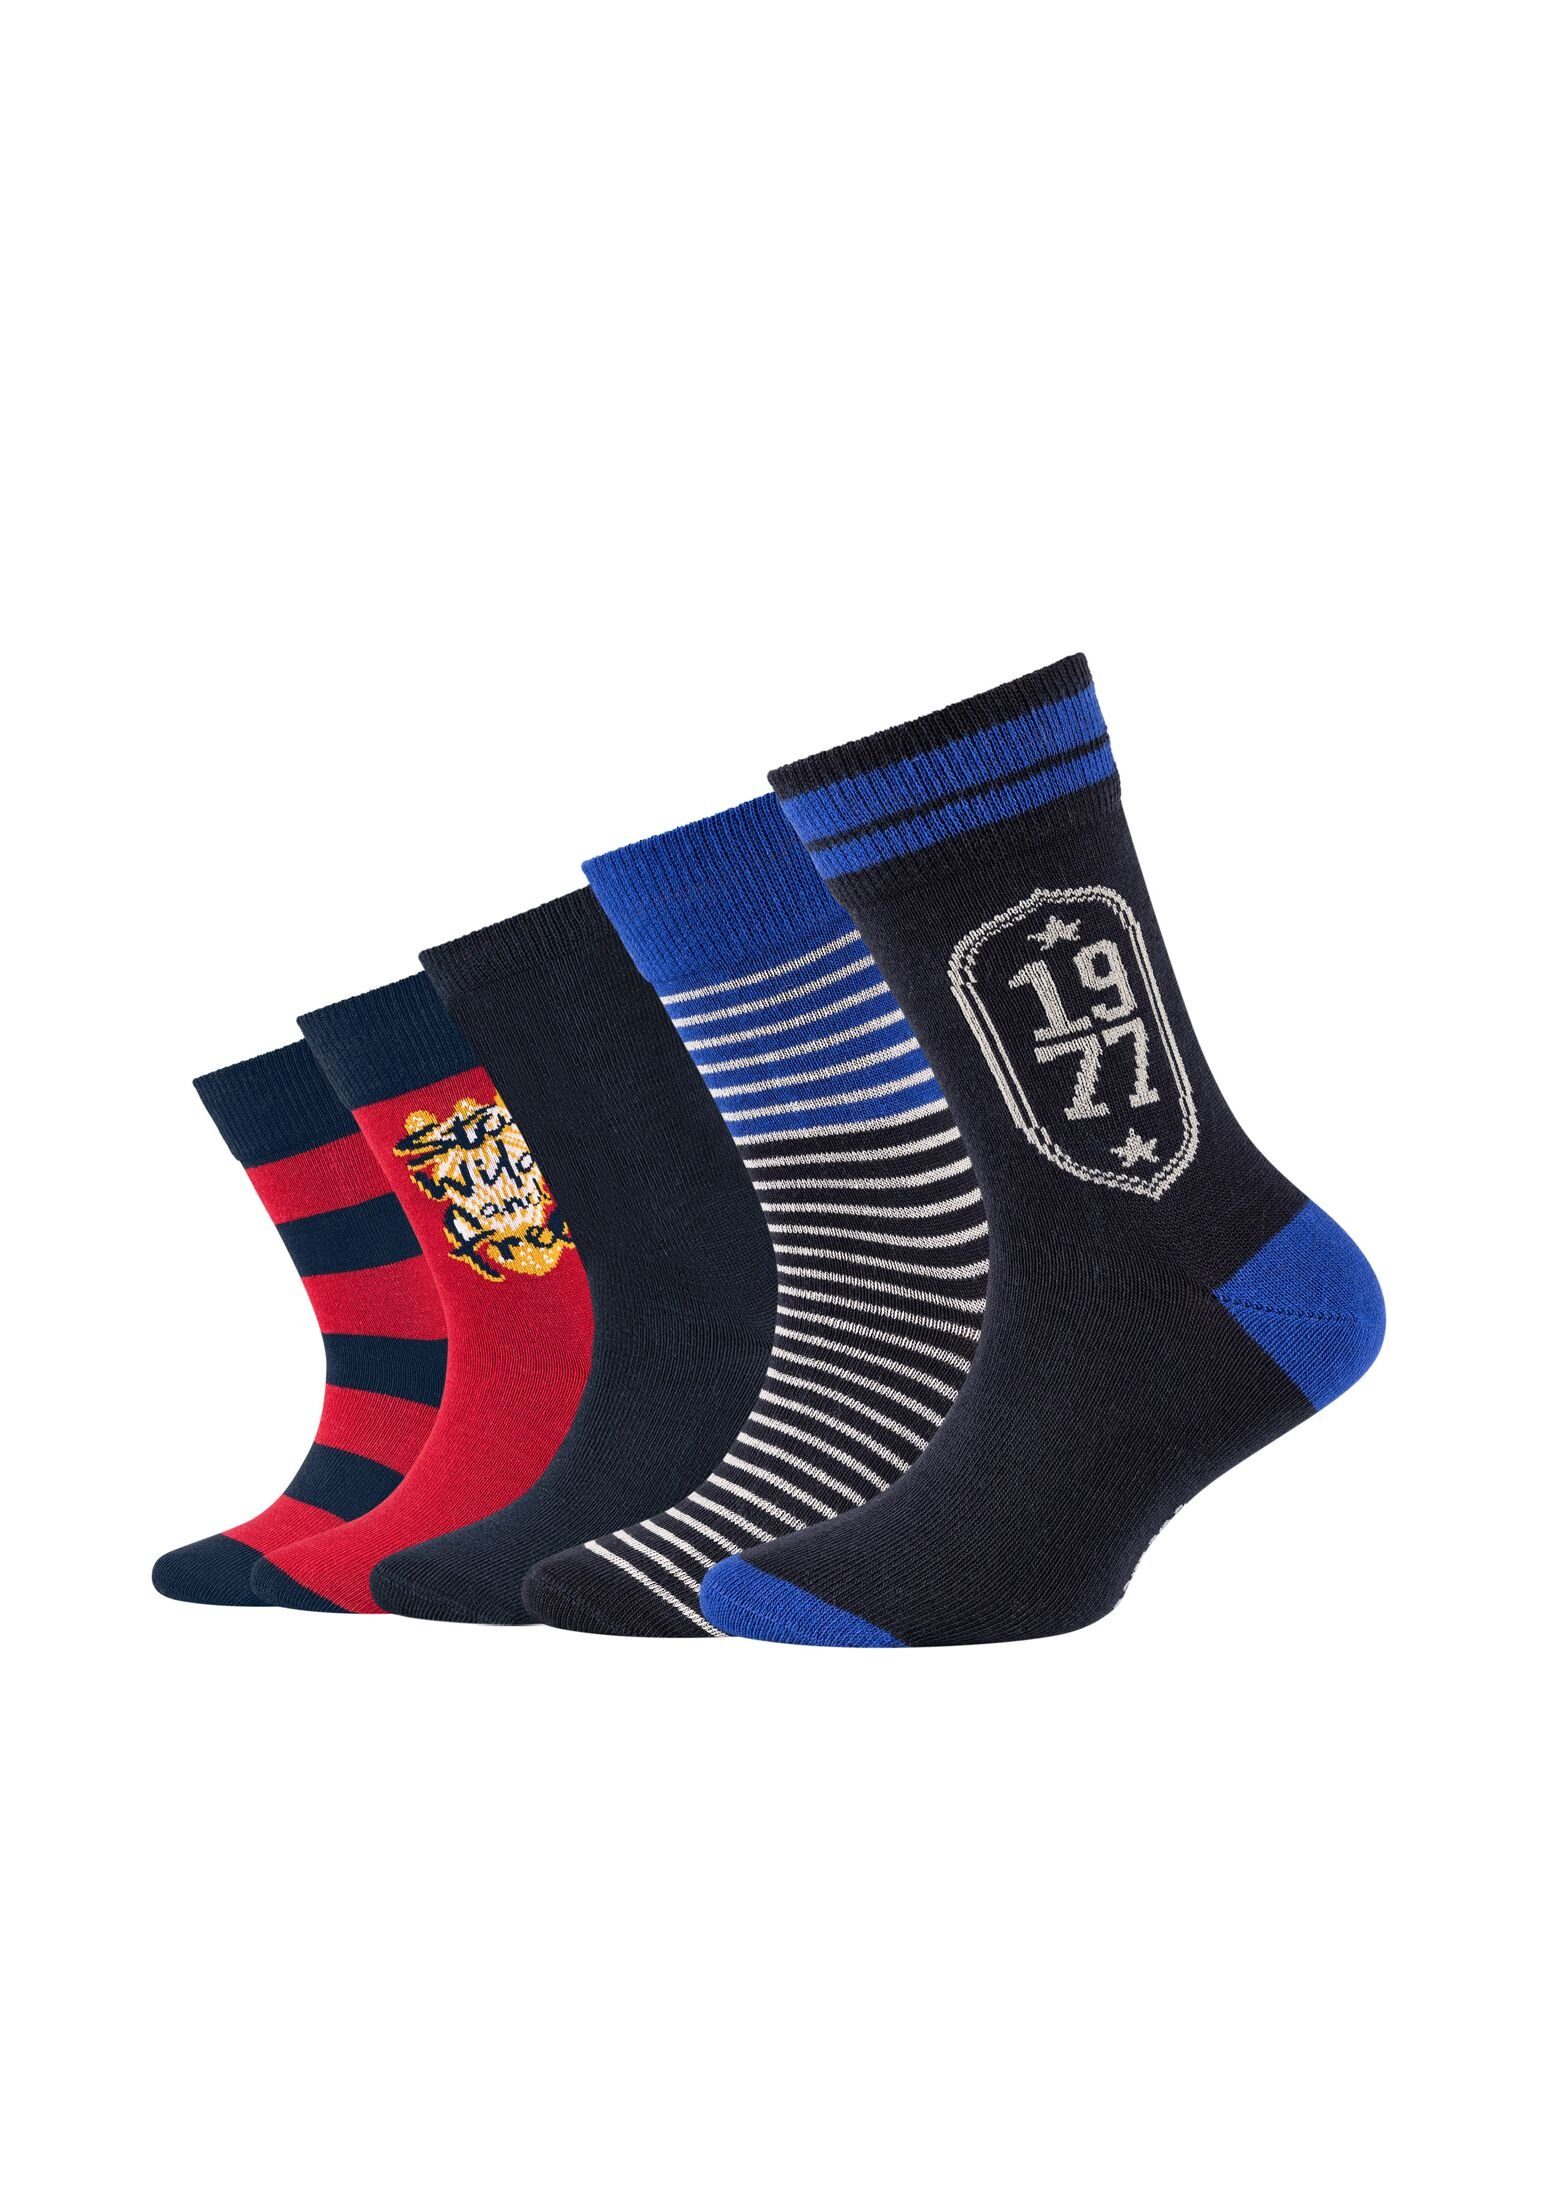 Camano Socken Pack Socken 5er navy